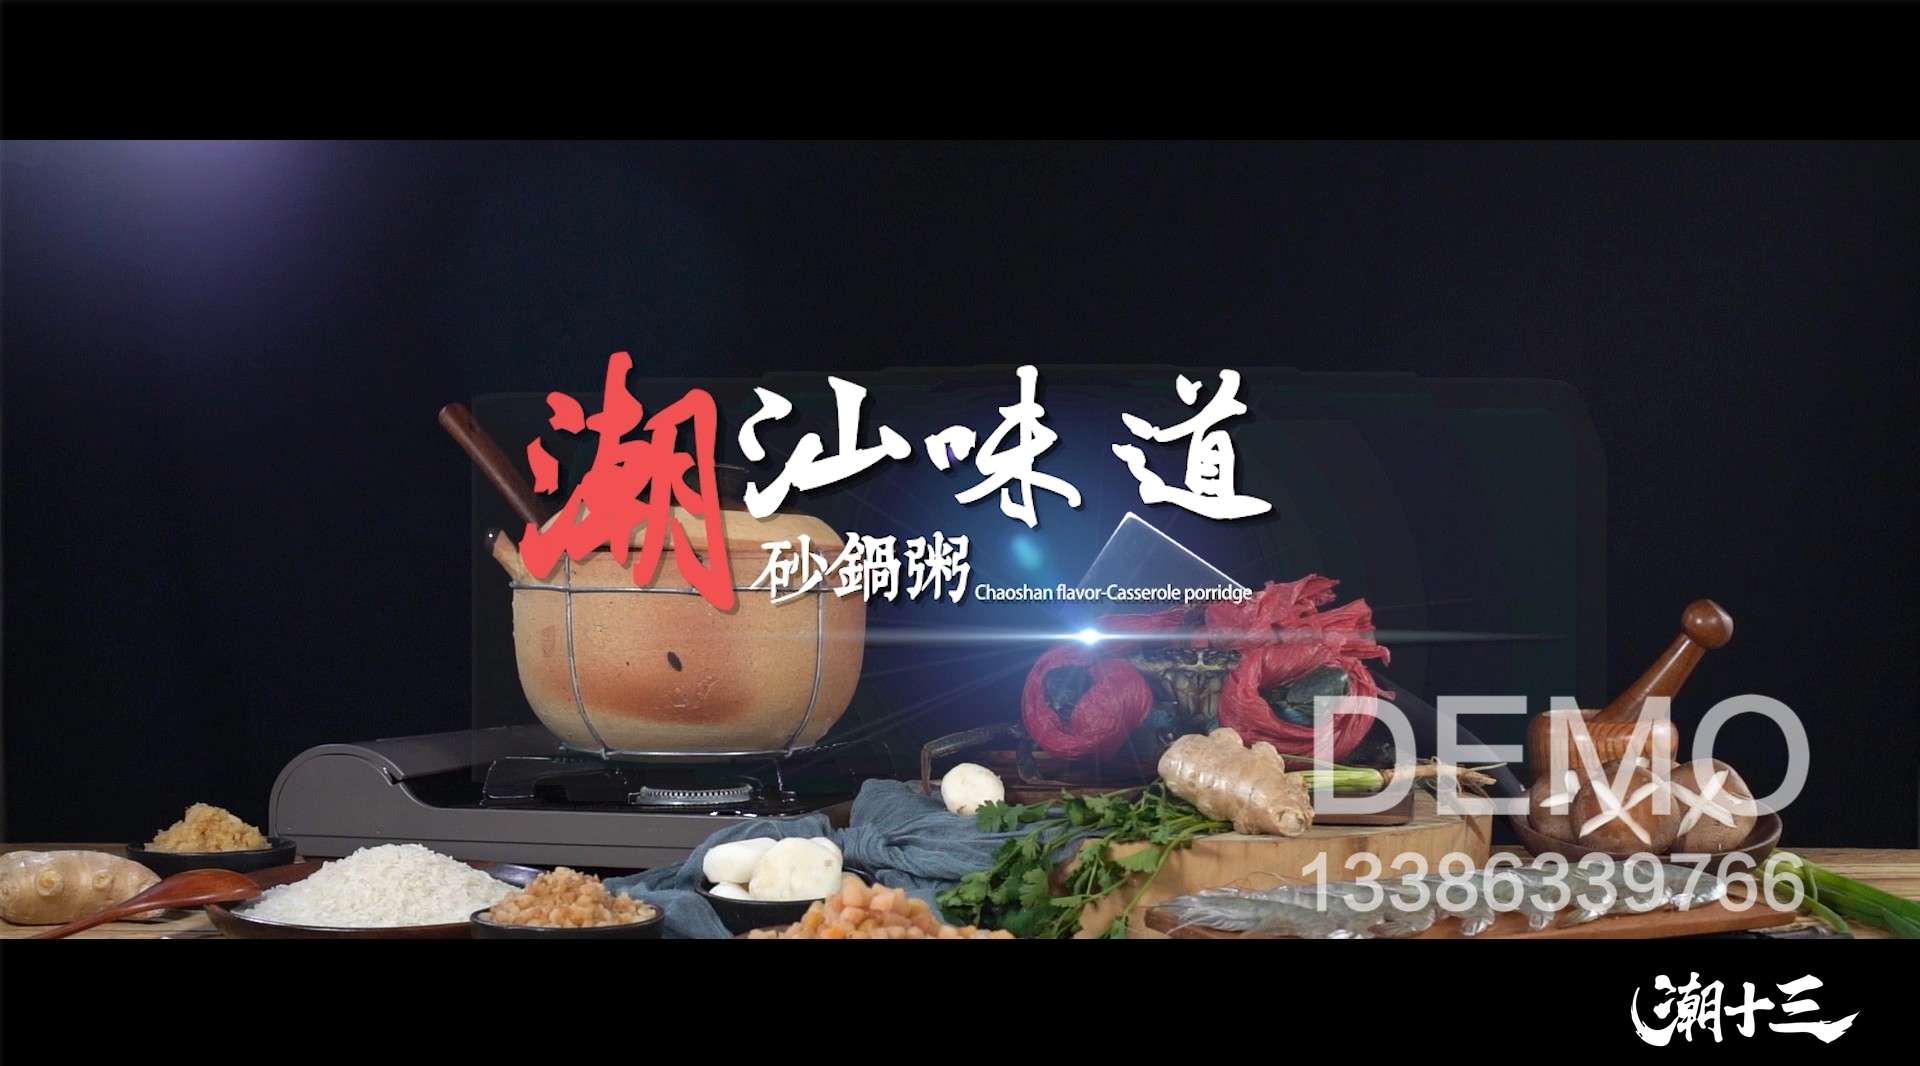 美食广告 潮汕砂锅粥